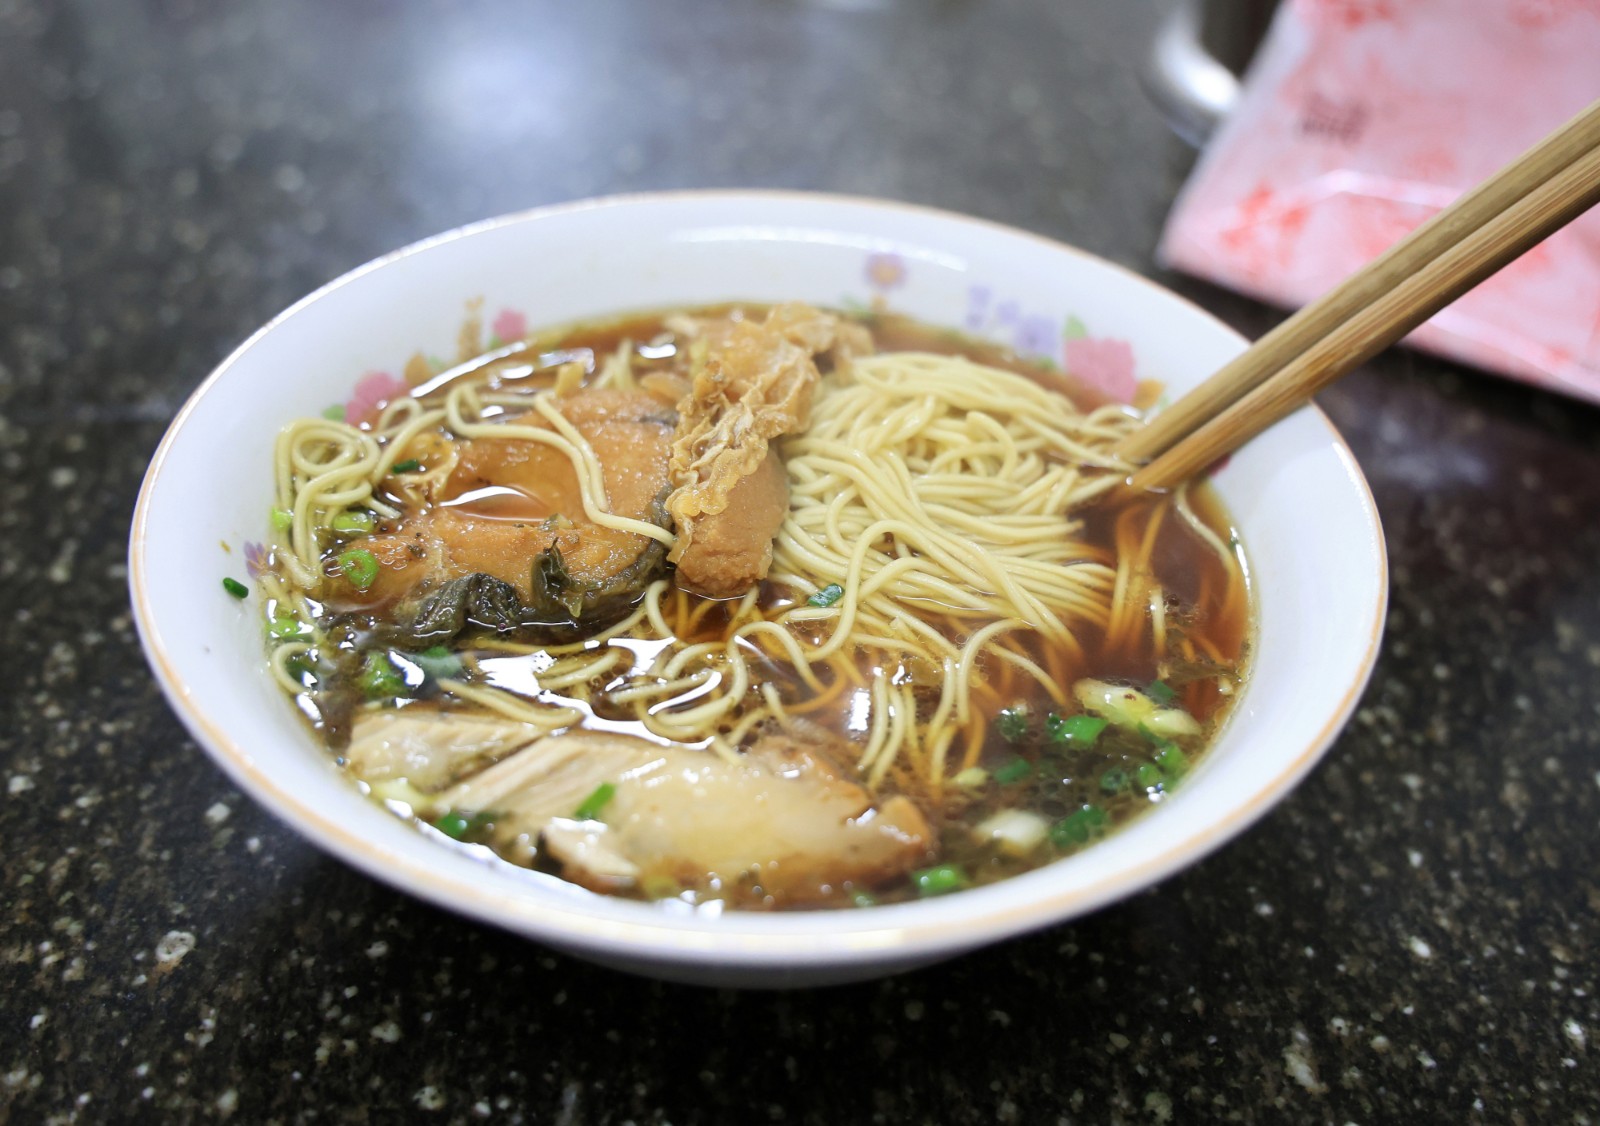 Shuangjiao-noodles